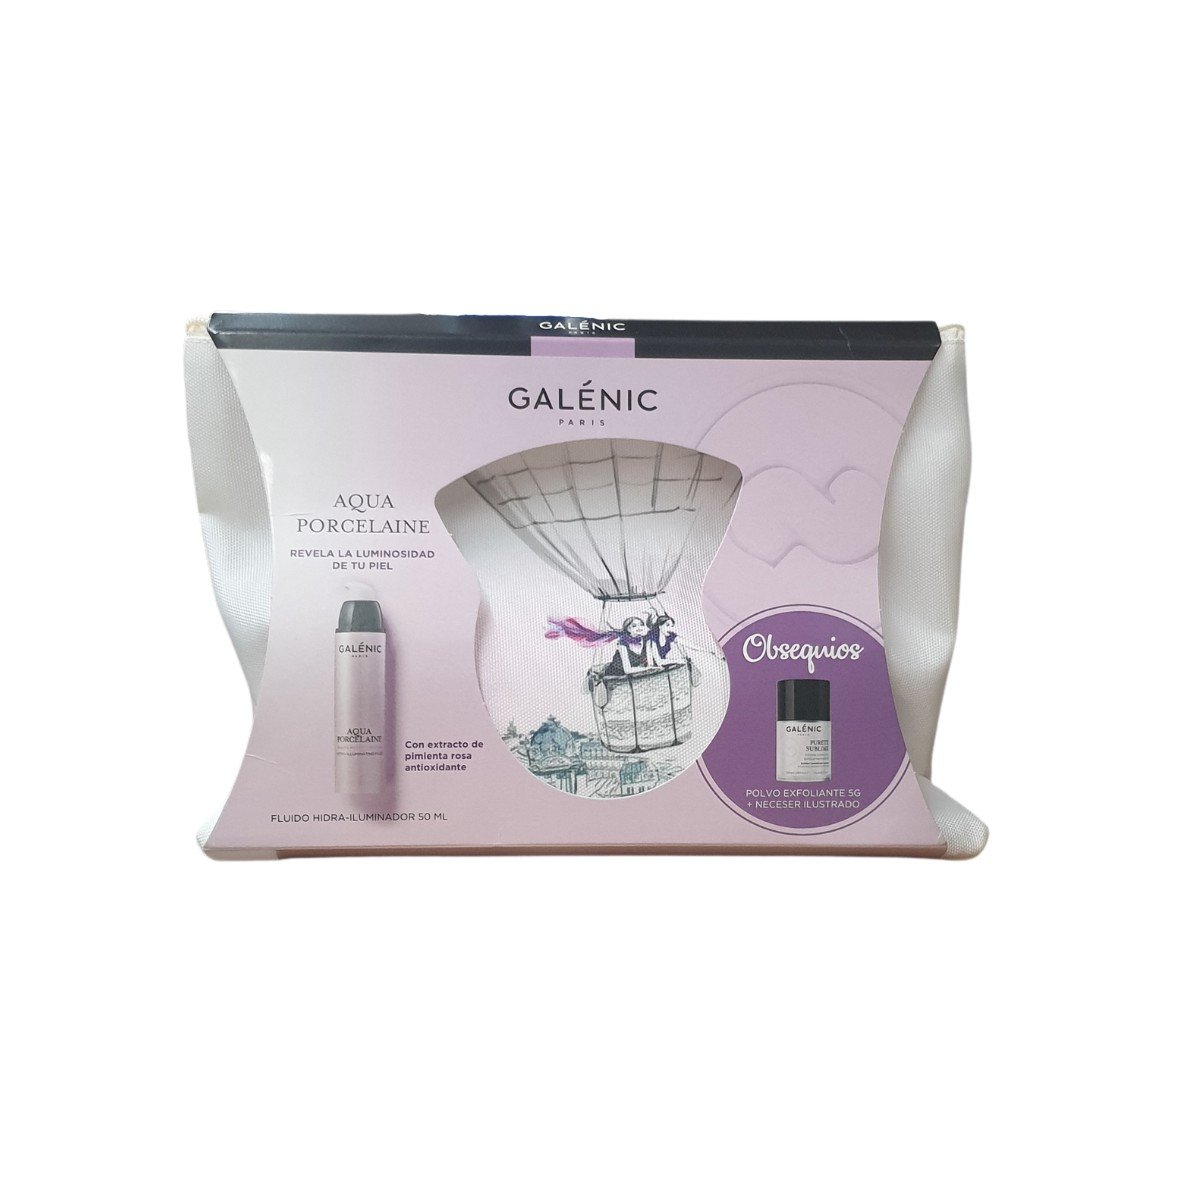 Galenic Purete Sublime Polvo Exfoliante + REGALO